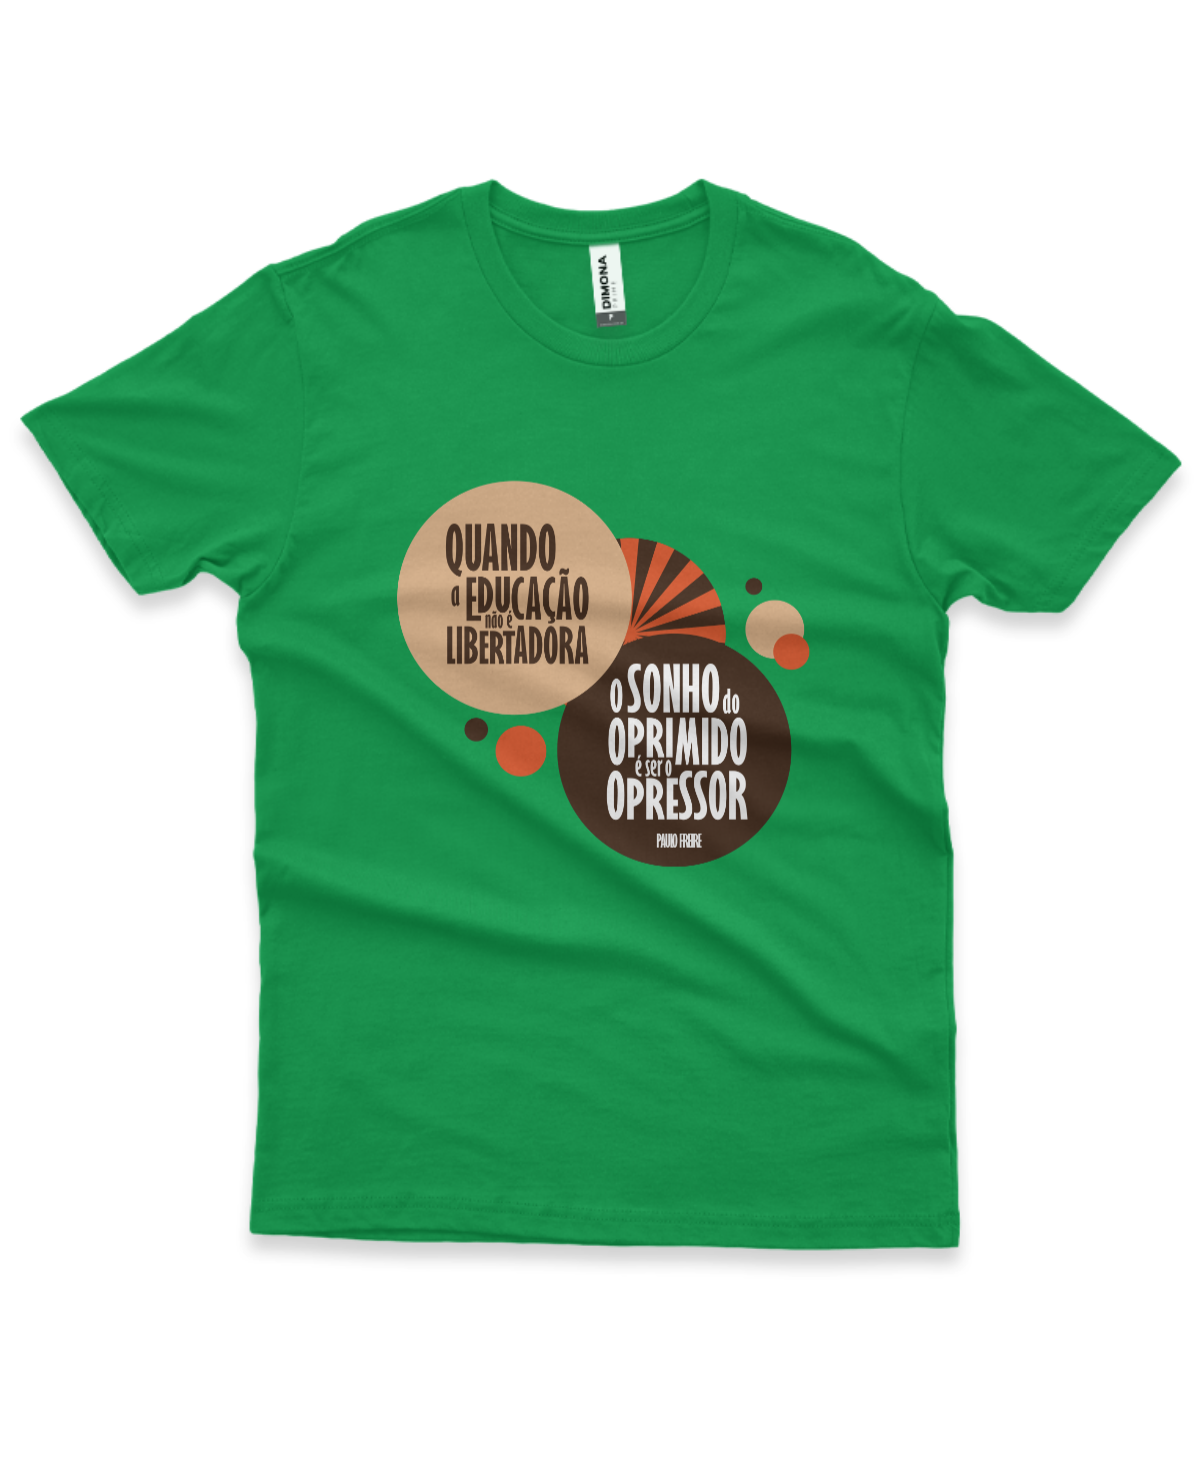 camiseta masculina cor verde com a frase "quando a educação não é libertadora, o sonho do oprimido é ser o opressor"